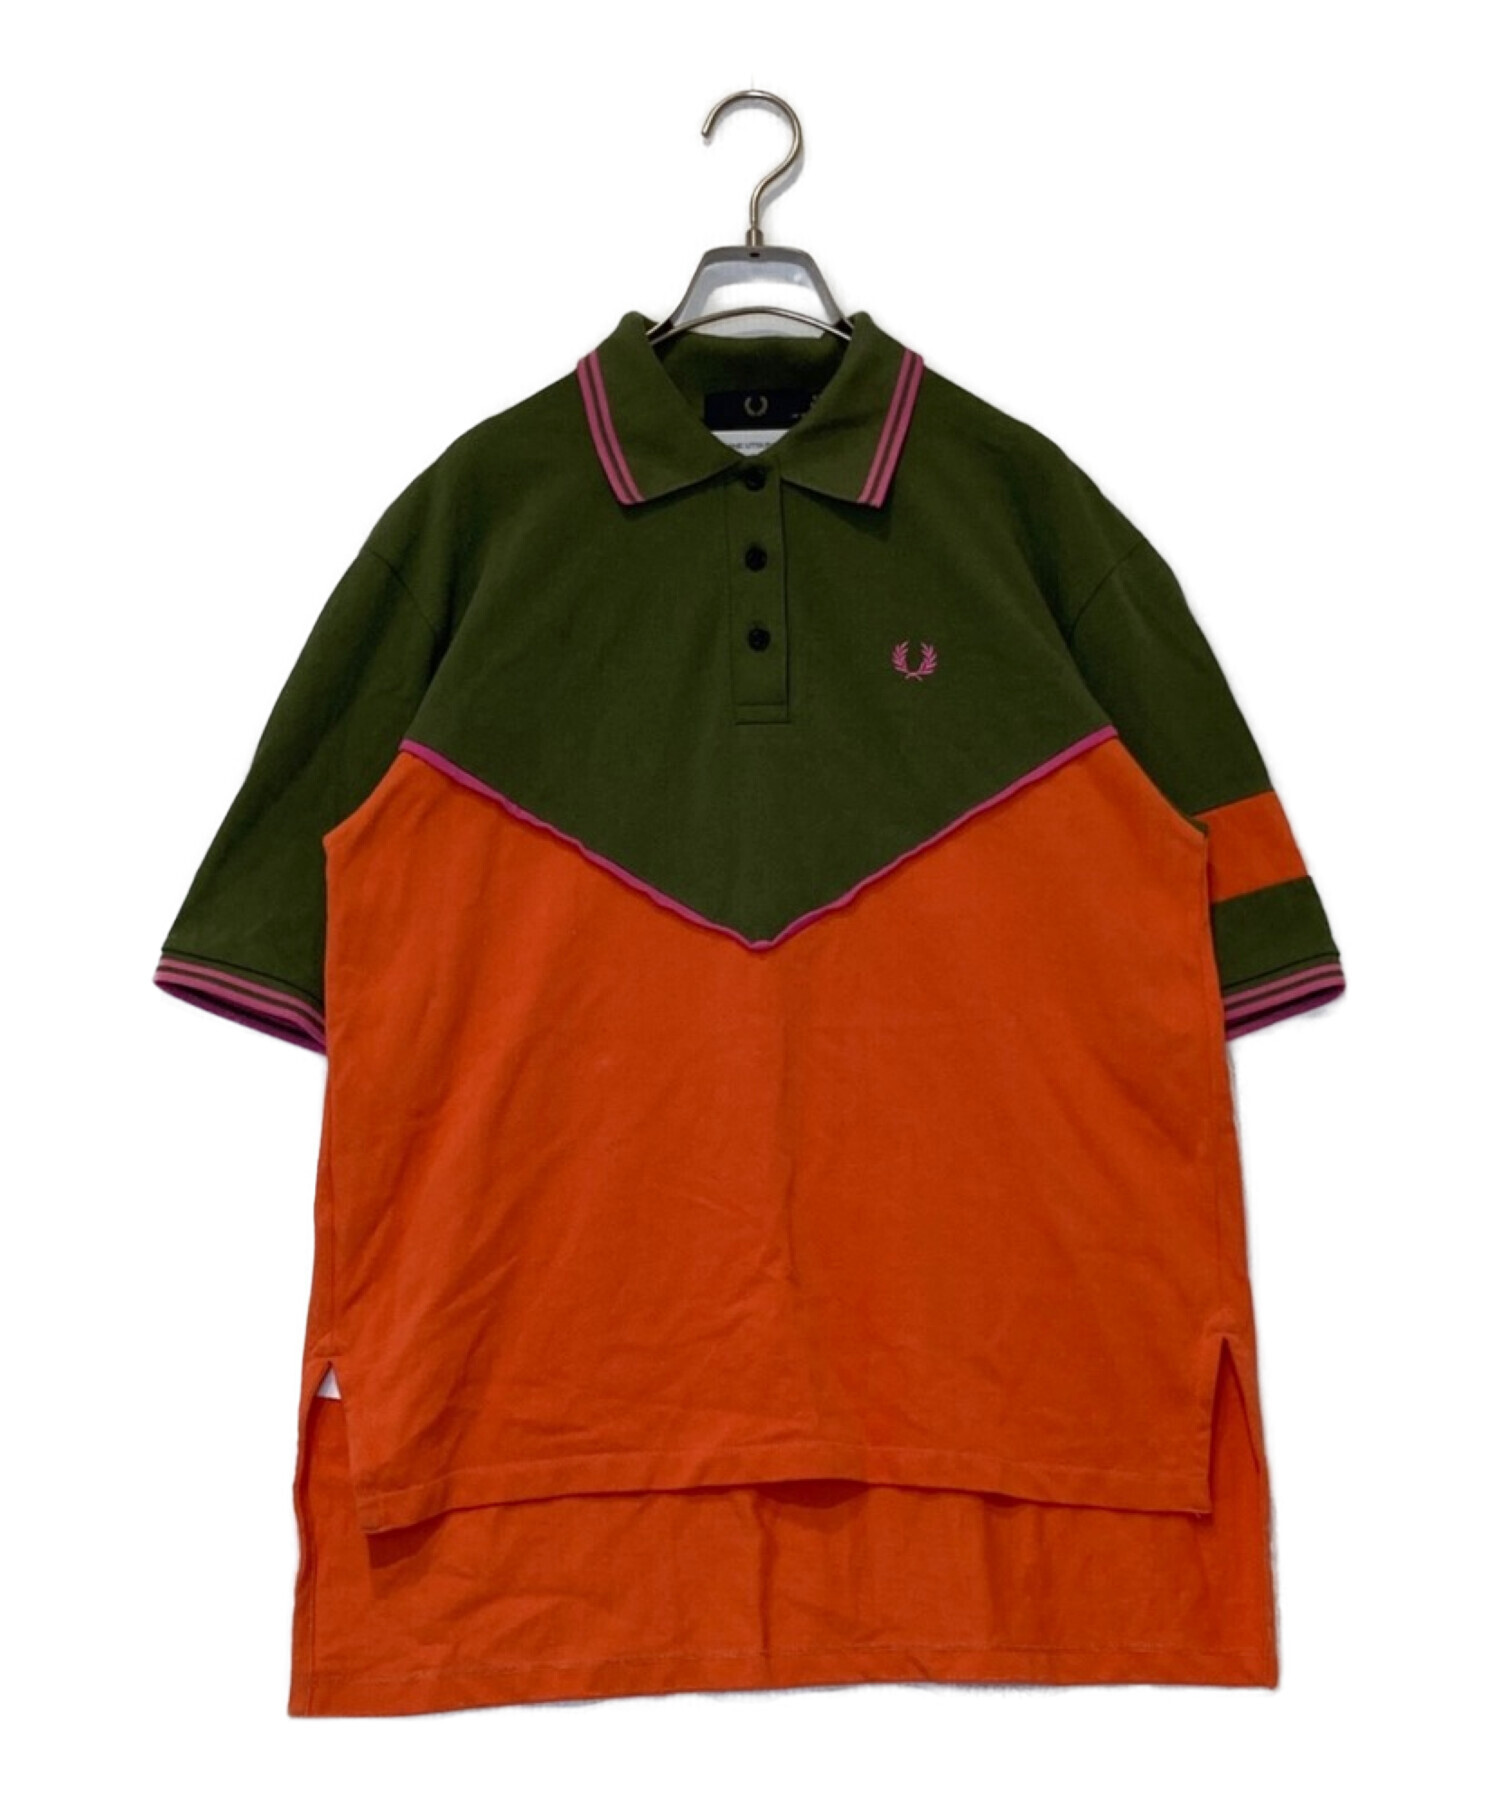 FRED PERRY (フレッドペリー) AKANE UTSUNOMIYA (アカネウツノミヤ) Cut And Sew Polo Shirt  マルチカラー サイズ:UK10